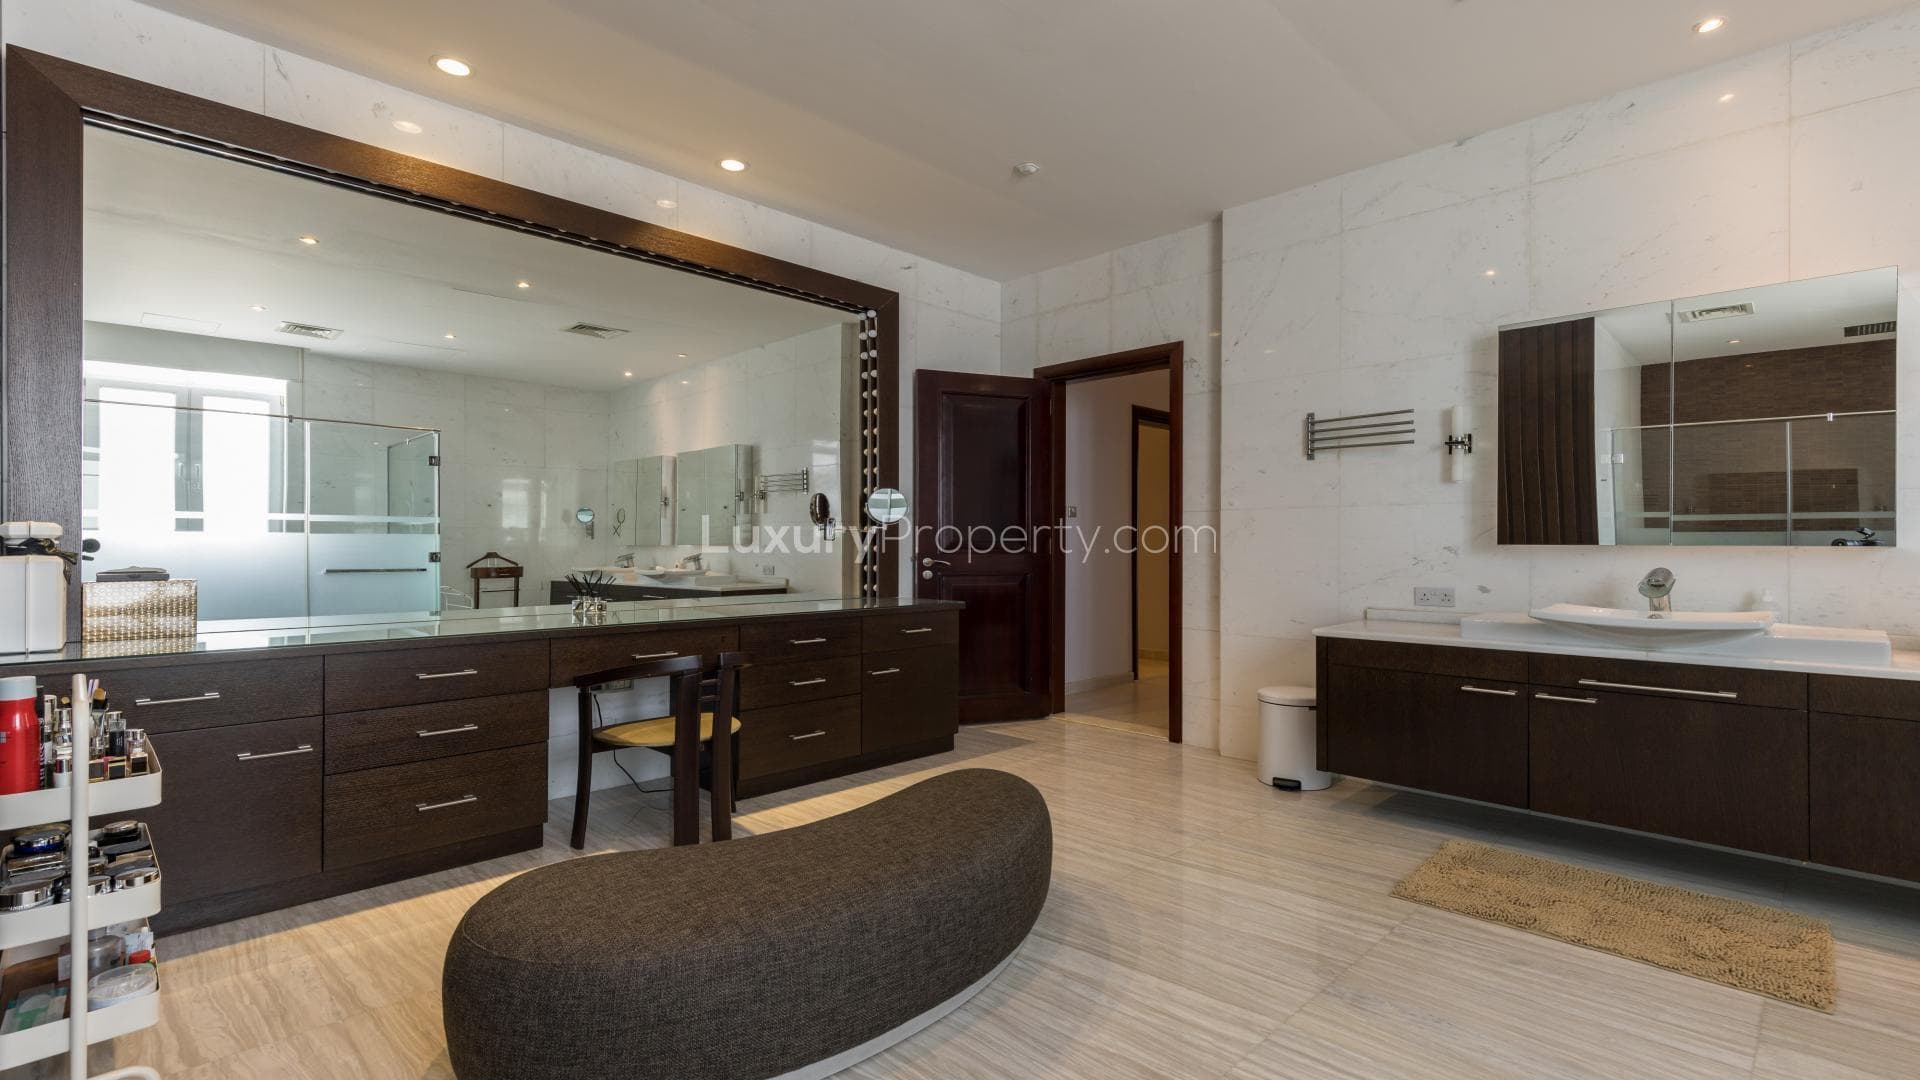 4 Bedroom Villa For Rent Emirates Hills Villas Lp20756 E8ed8f827062f80.jpg